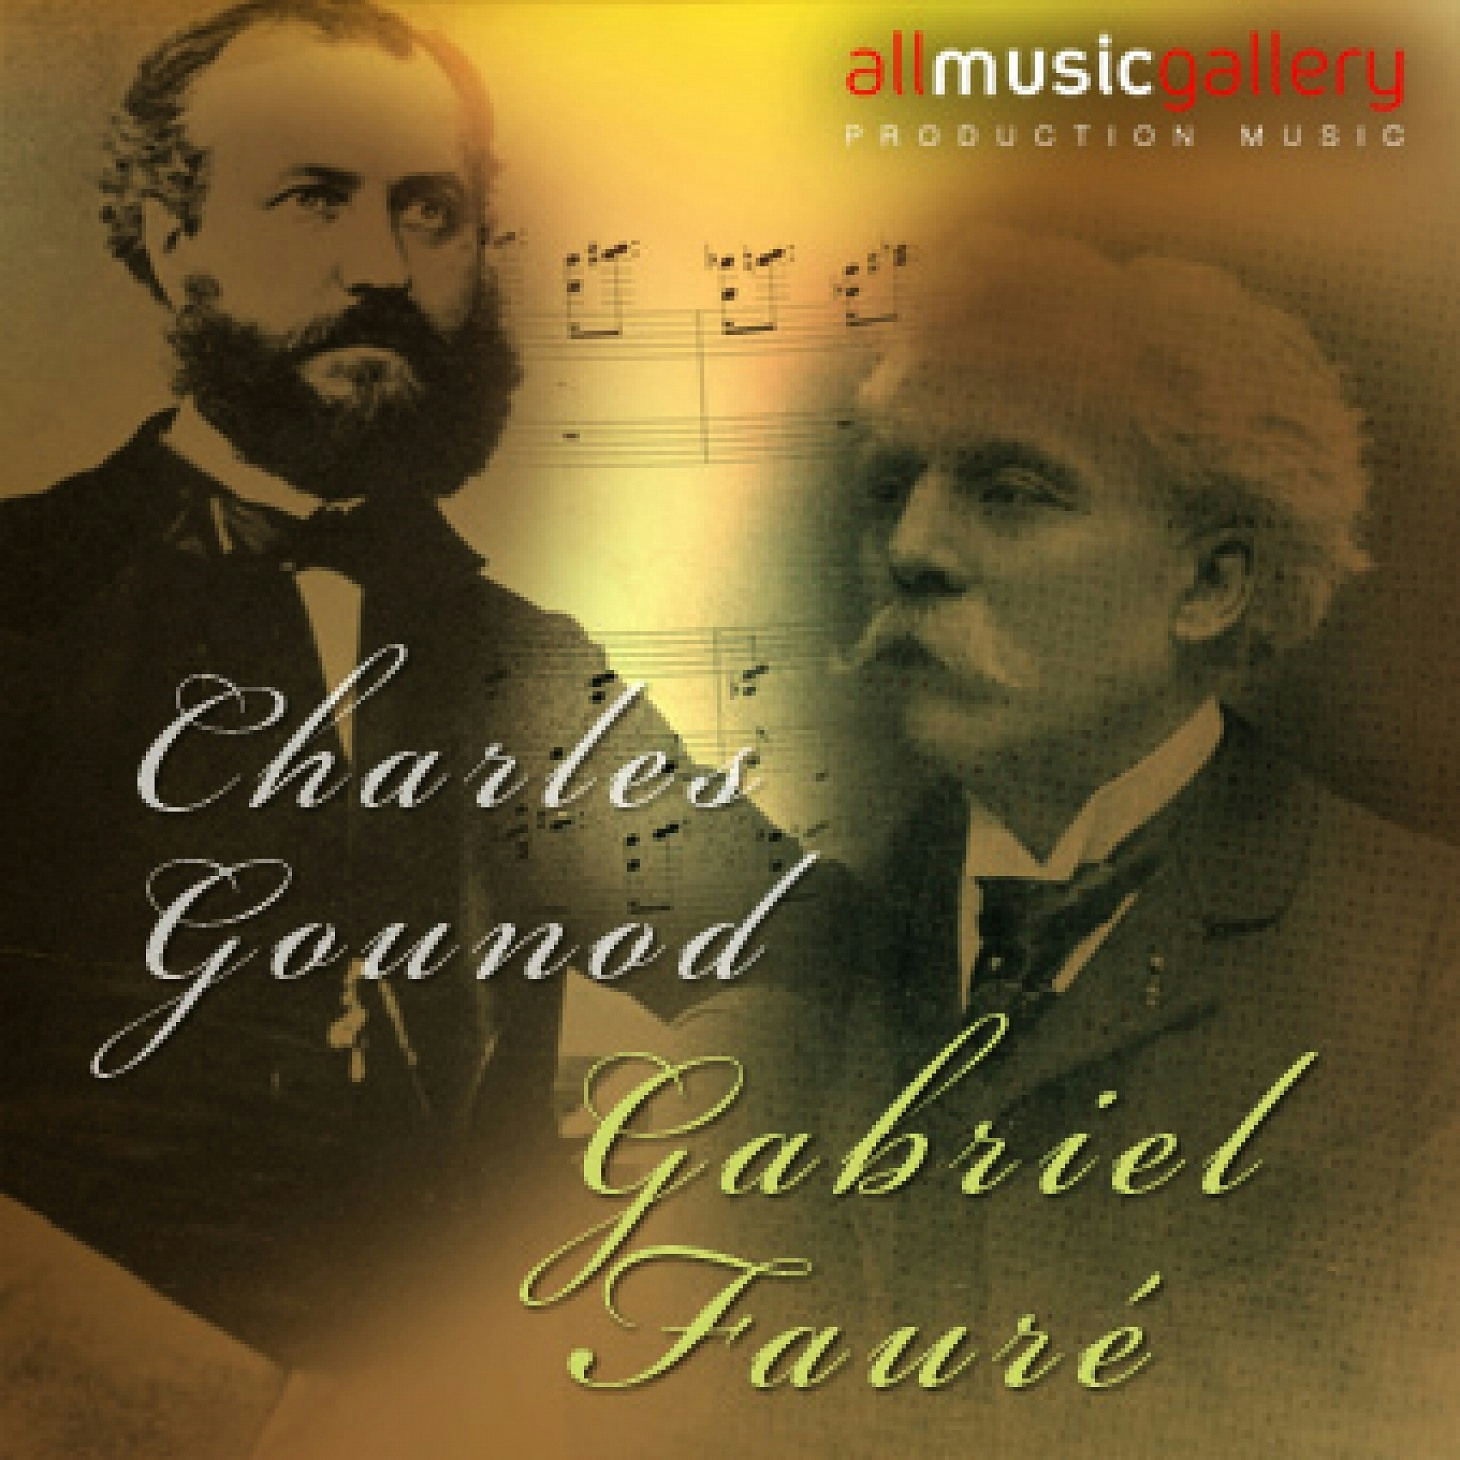 Charles Gounod - Gabriel Faure